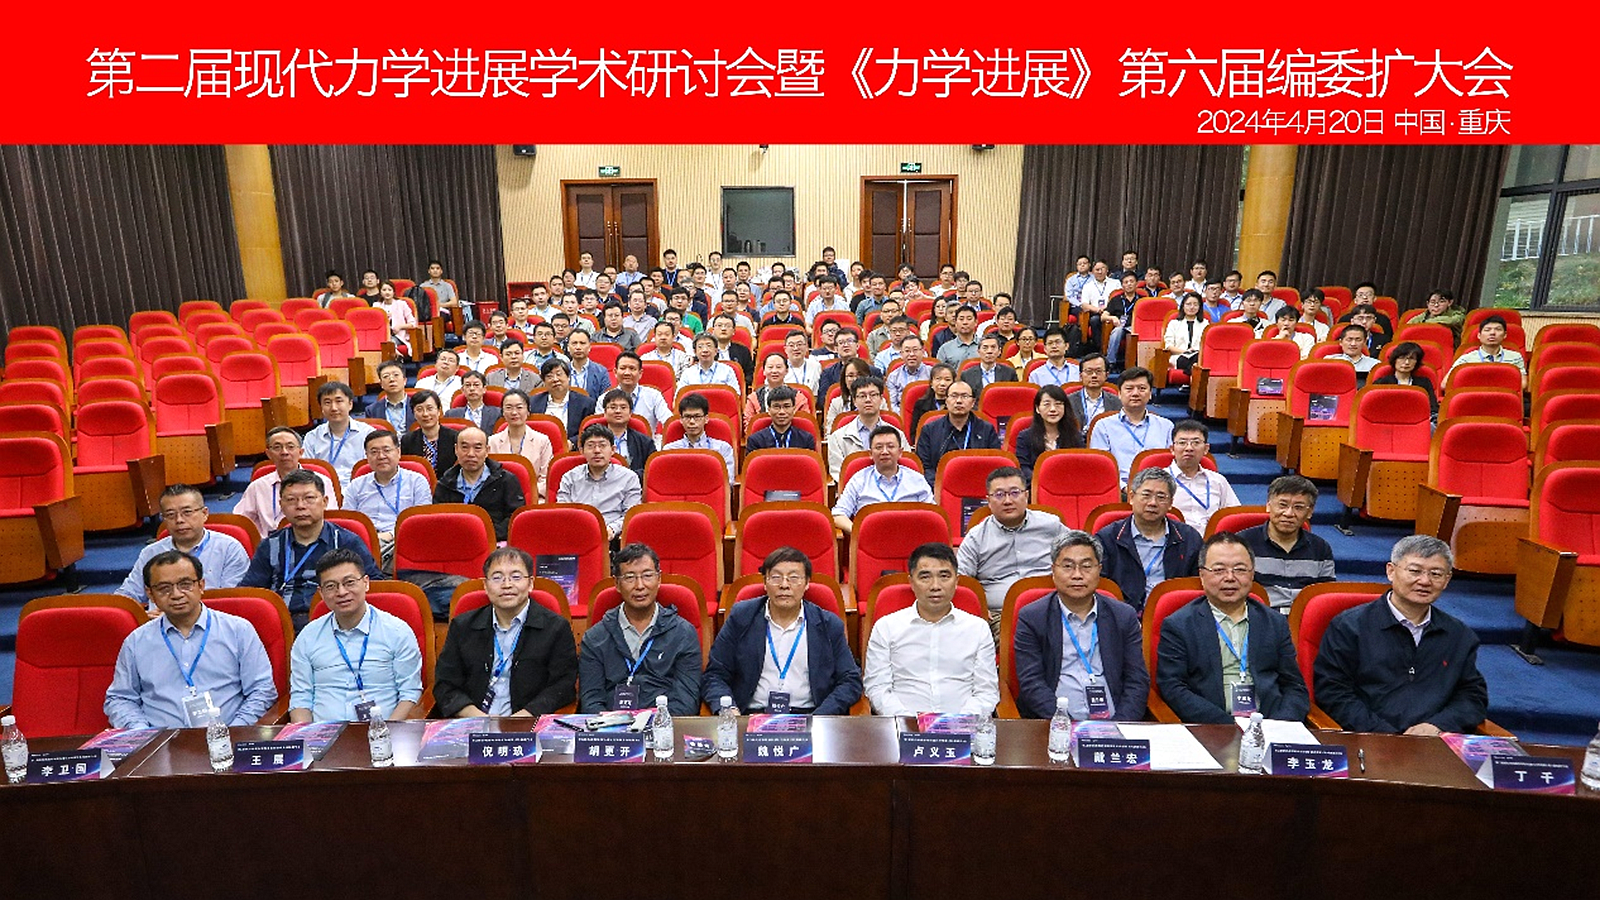 第二届现代力学进展学术研讨会暨《力学进展》第六届编委扩大会在重庆大学召开